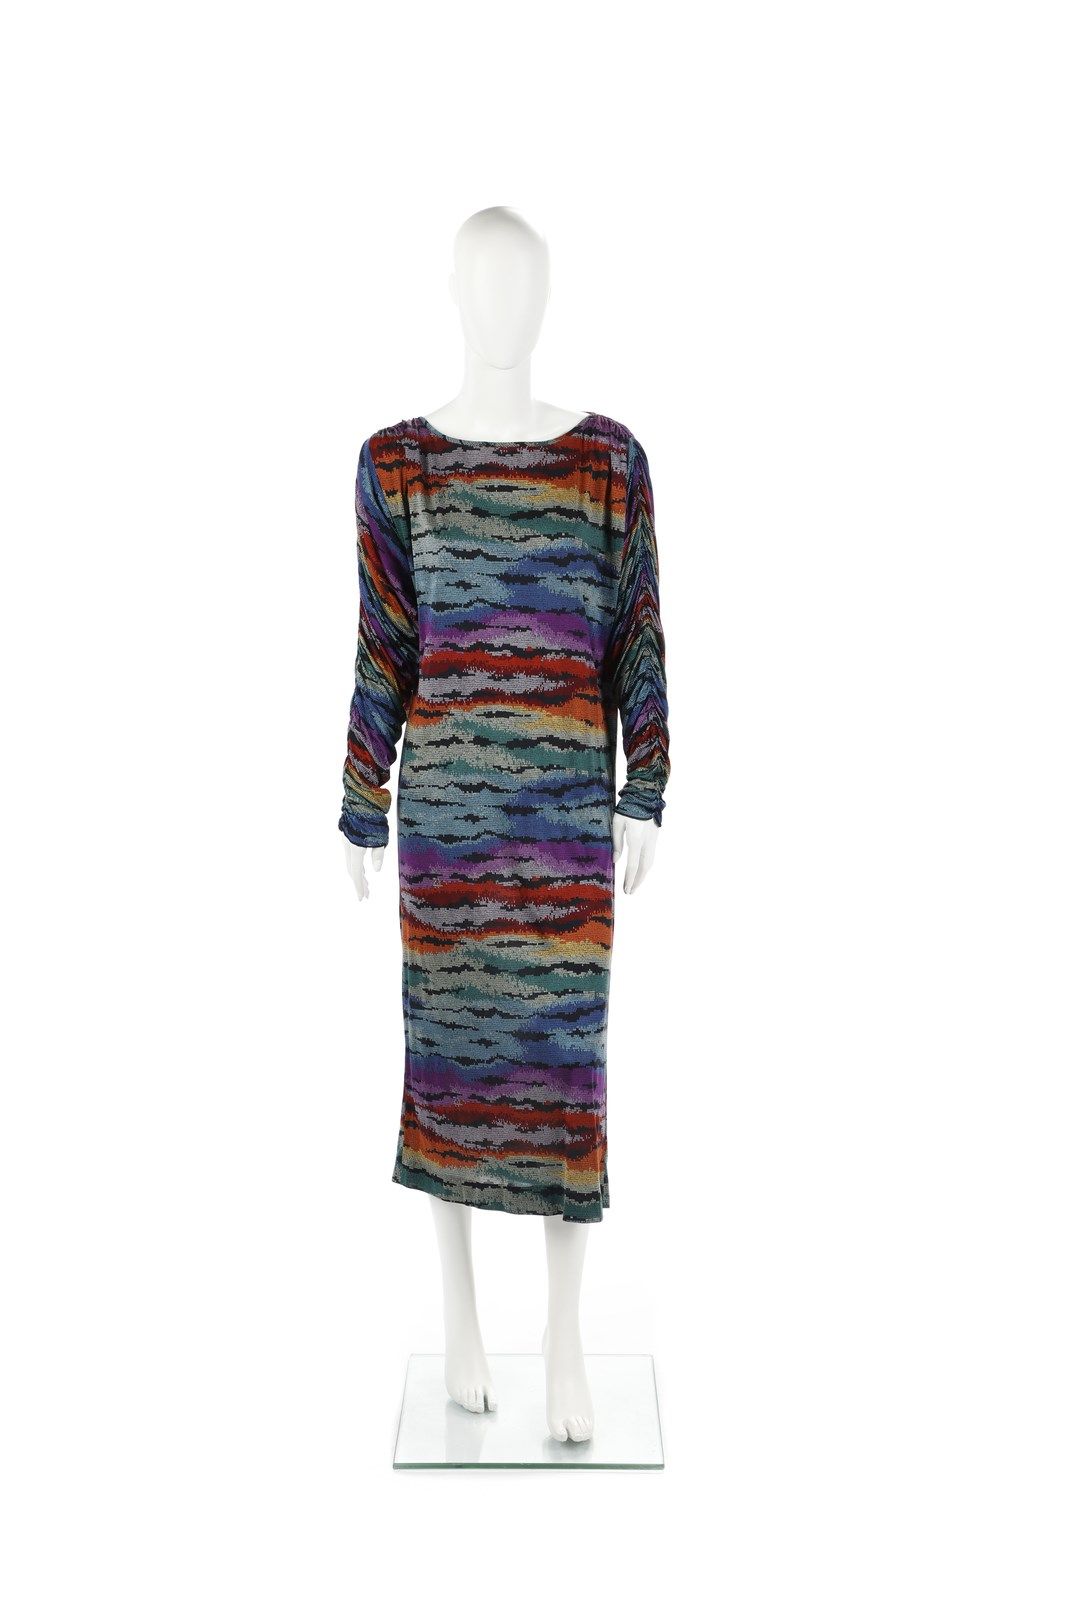 MISSONI Longuette dress in multicolored silk. Size 42/44 IT. Longuette dress in &hellip;